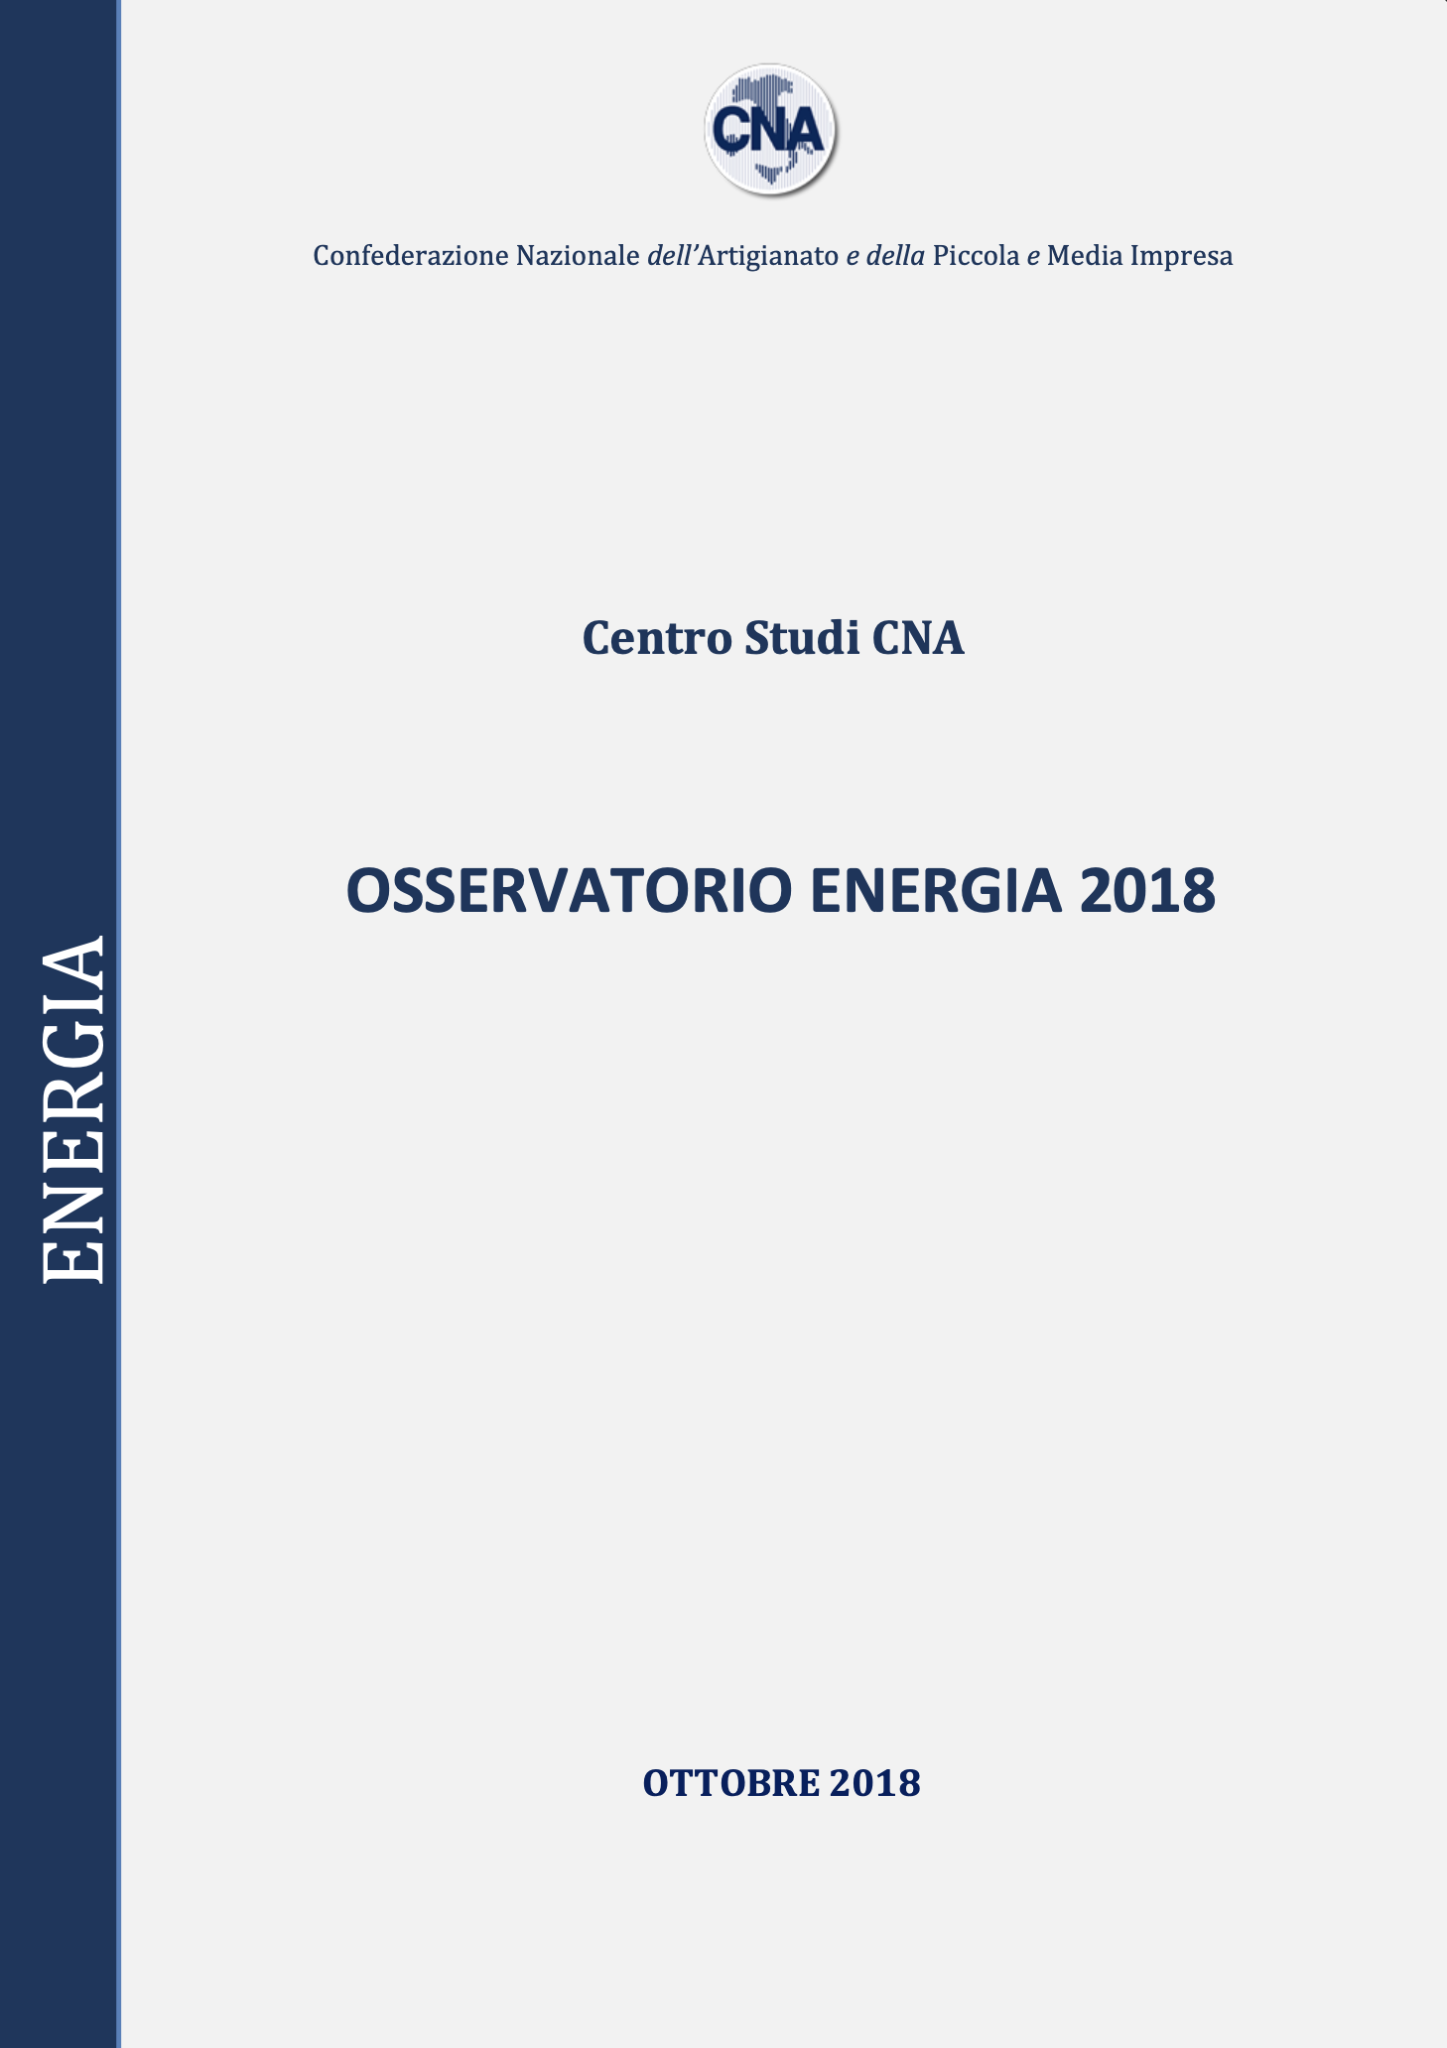 OSSERVATORIO ENERGIA 2018